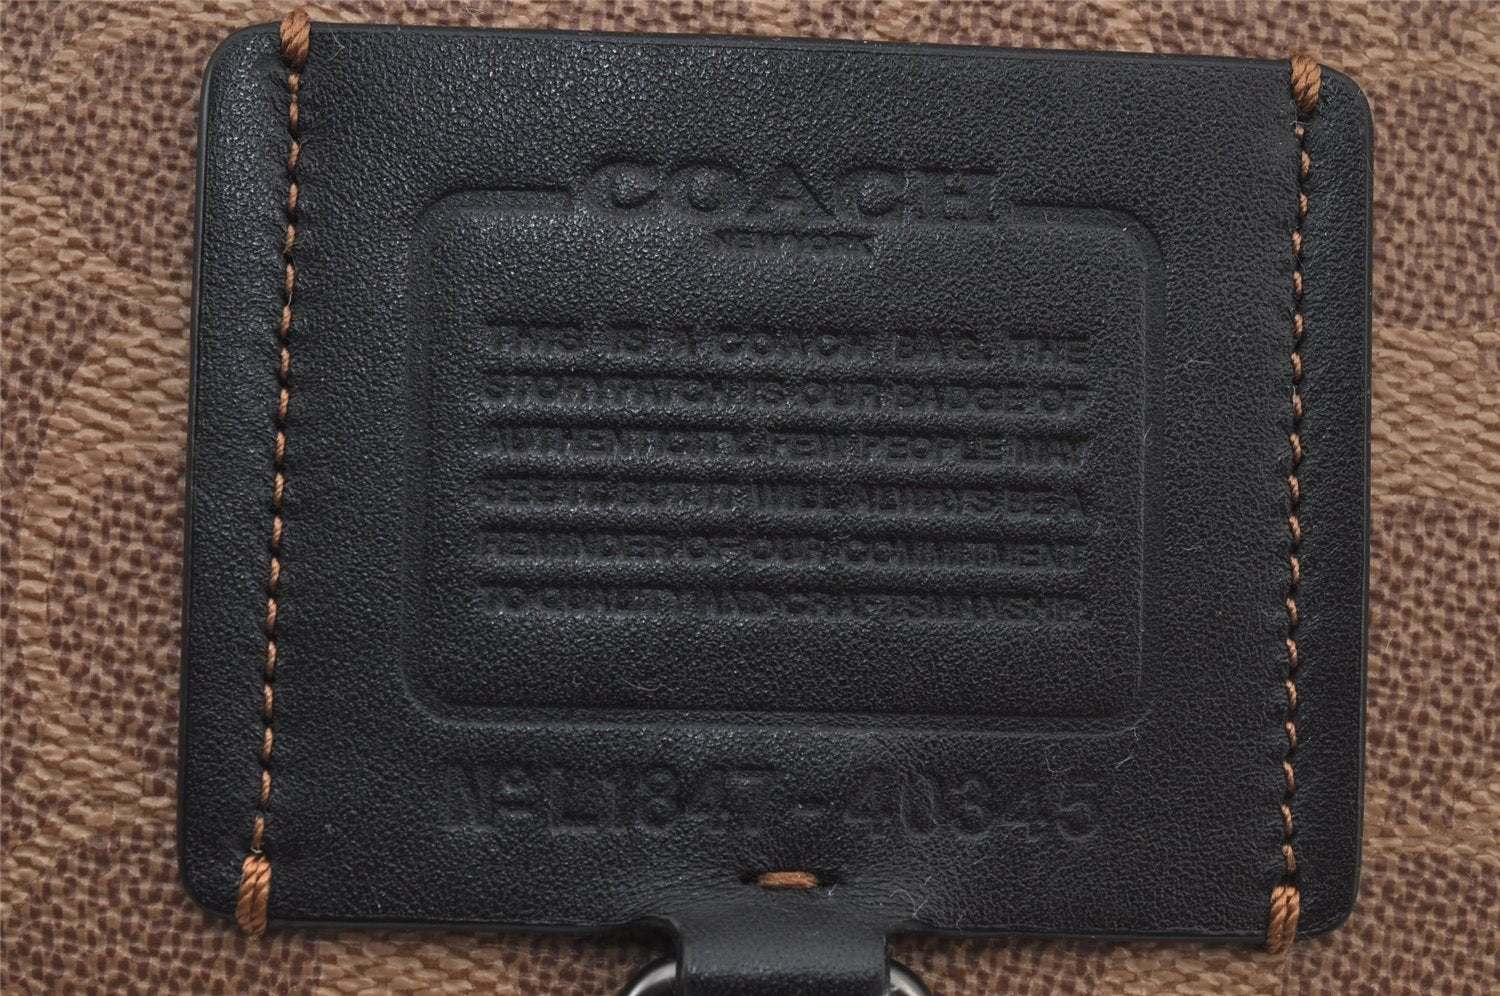 Authentic COACH Vintage Signature Waist Body Bag PVC Leather 40345 Beige 6694J